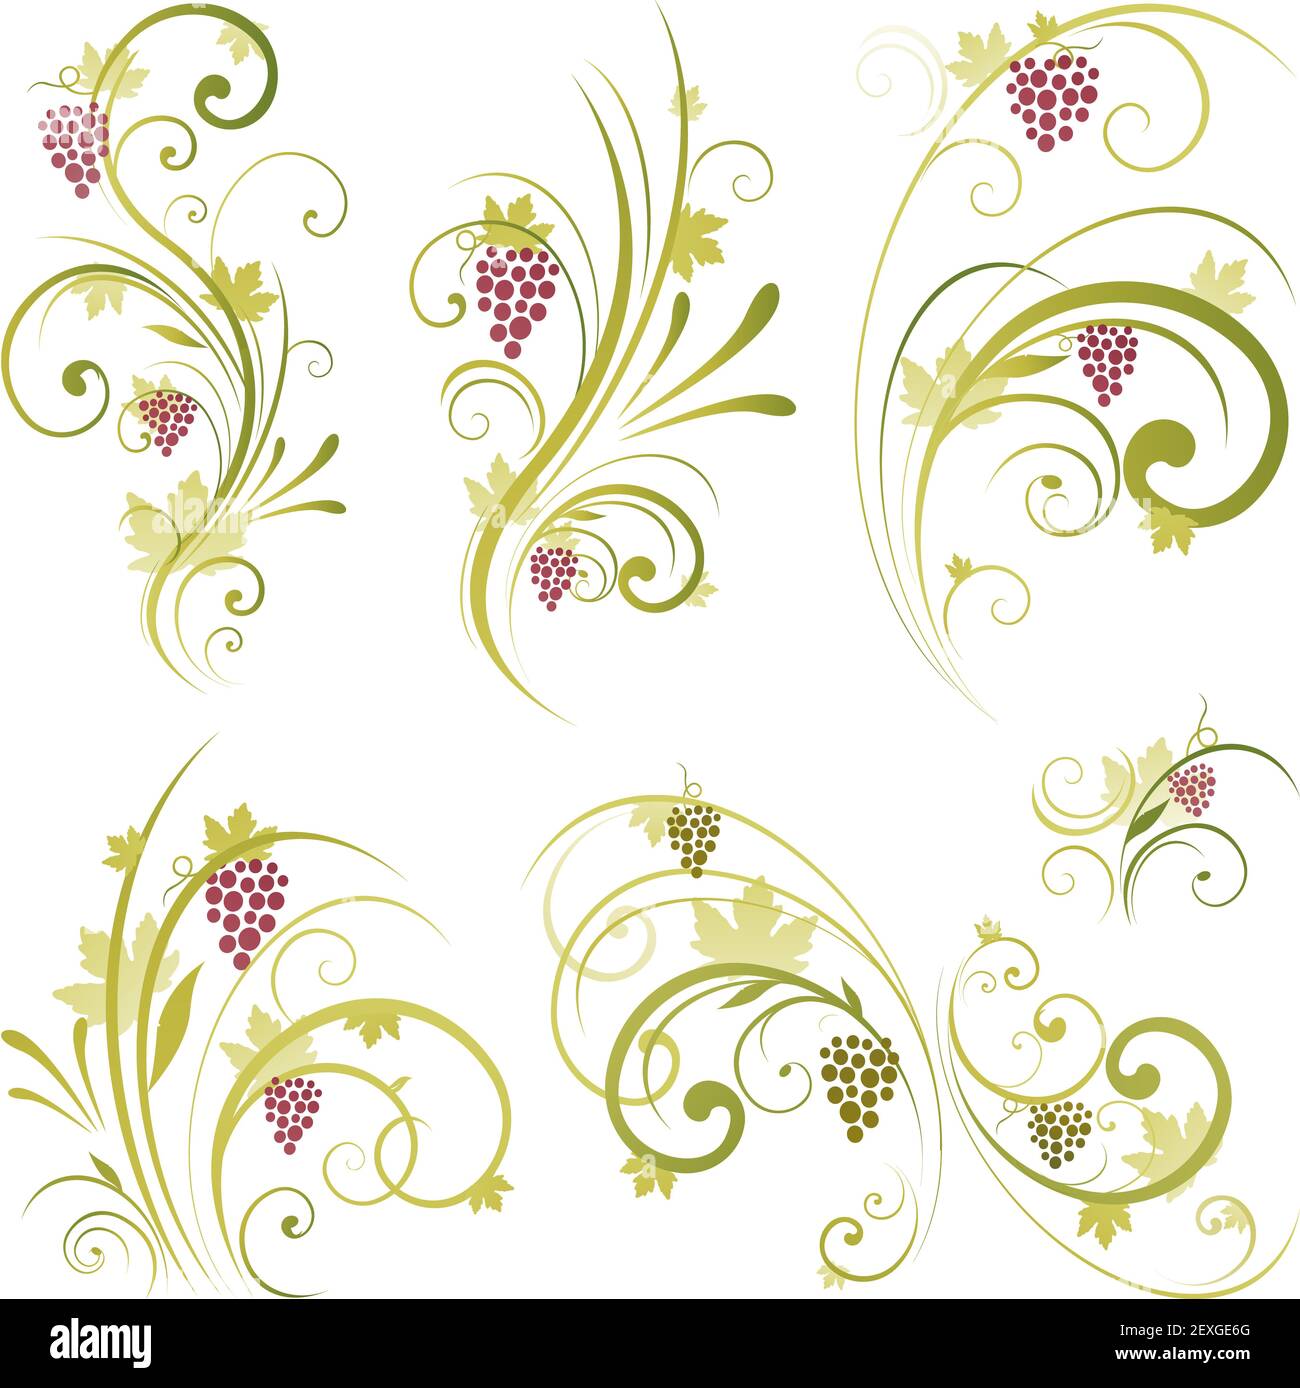 Wine design ornament Stock Photo